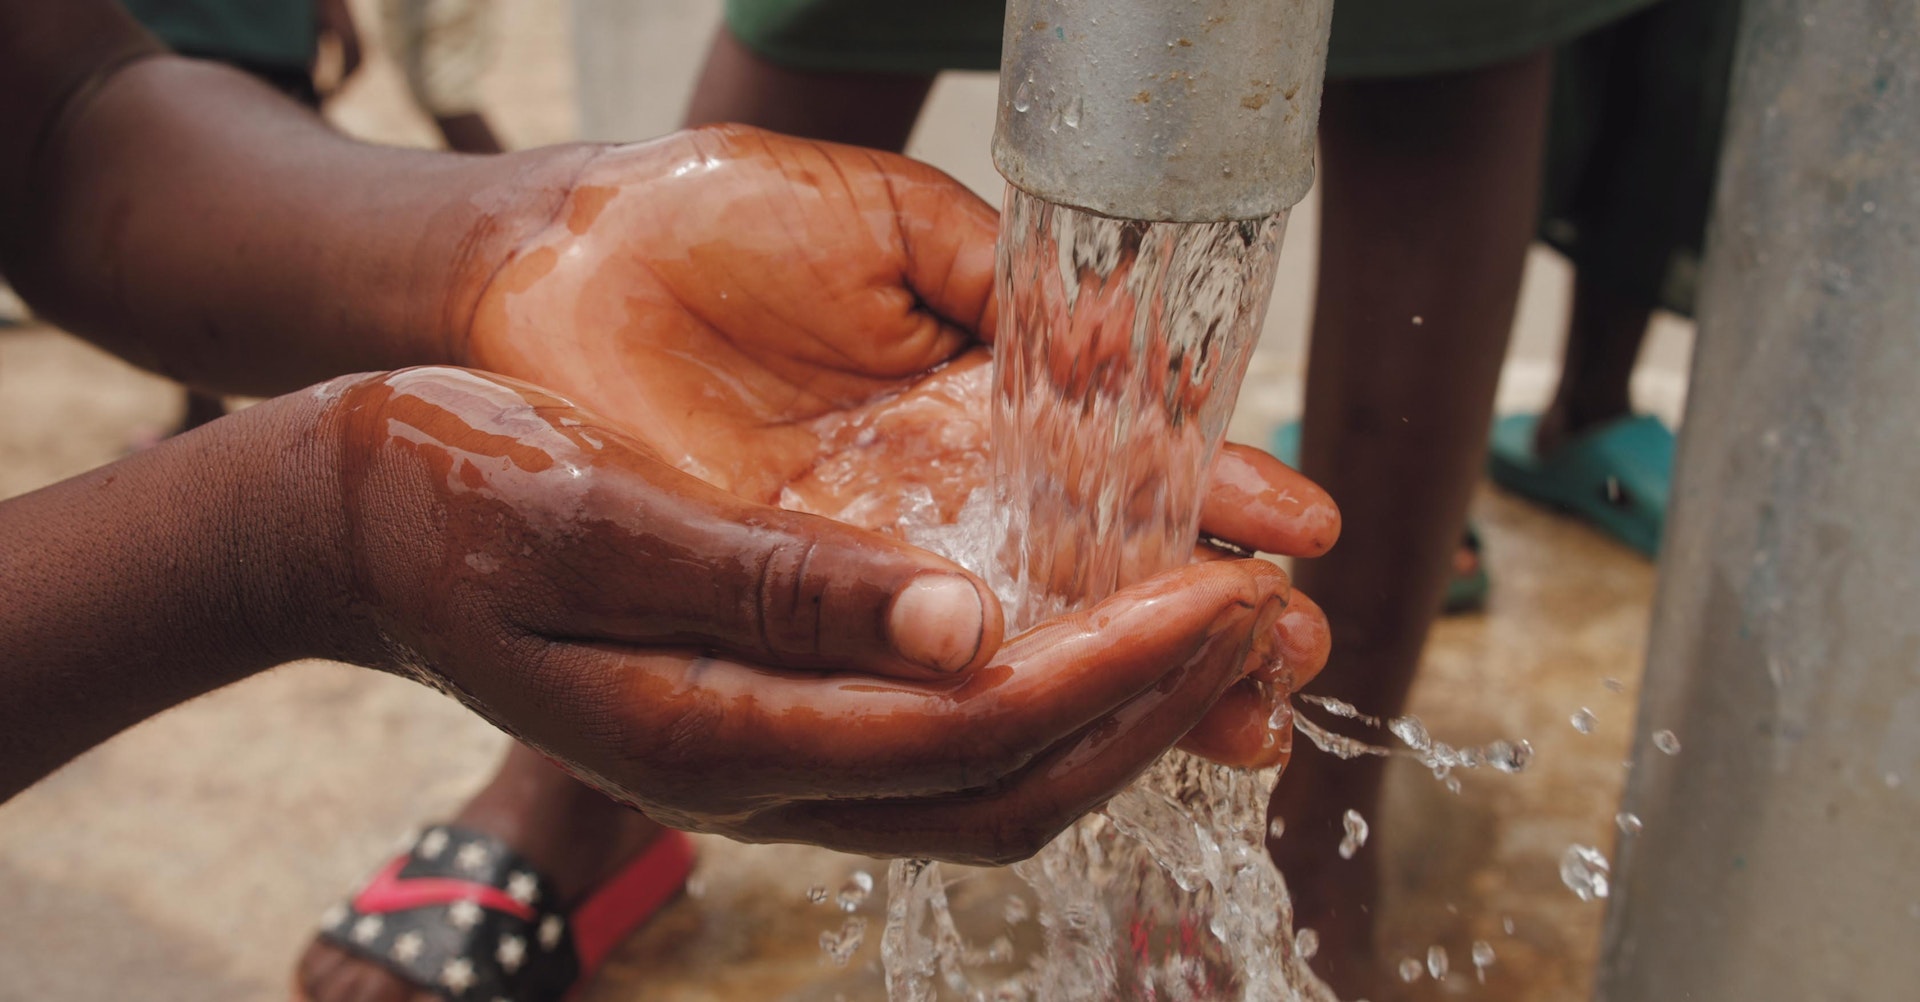 Tres startups israelís utilizarán su tecnología para llevar agua potable a diversos pueblos en el continente africano. Foto: Kelly/Pexels.